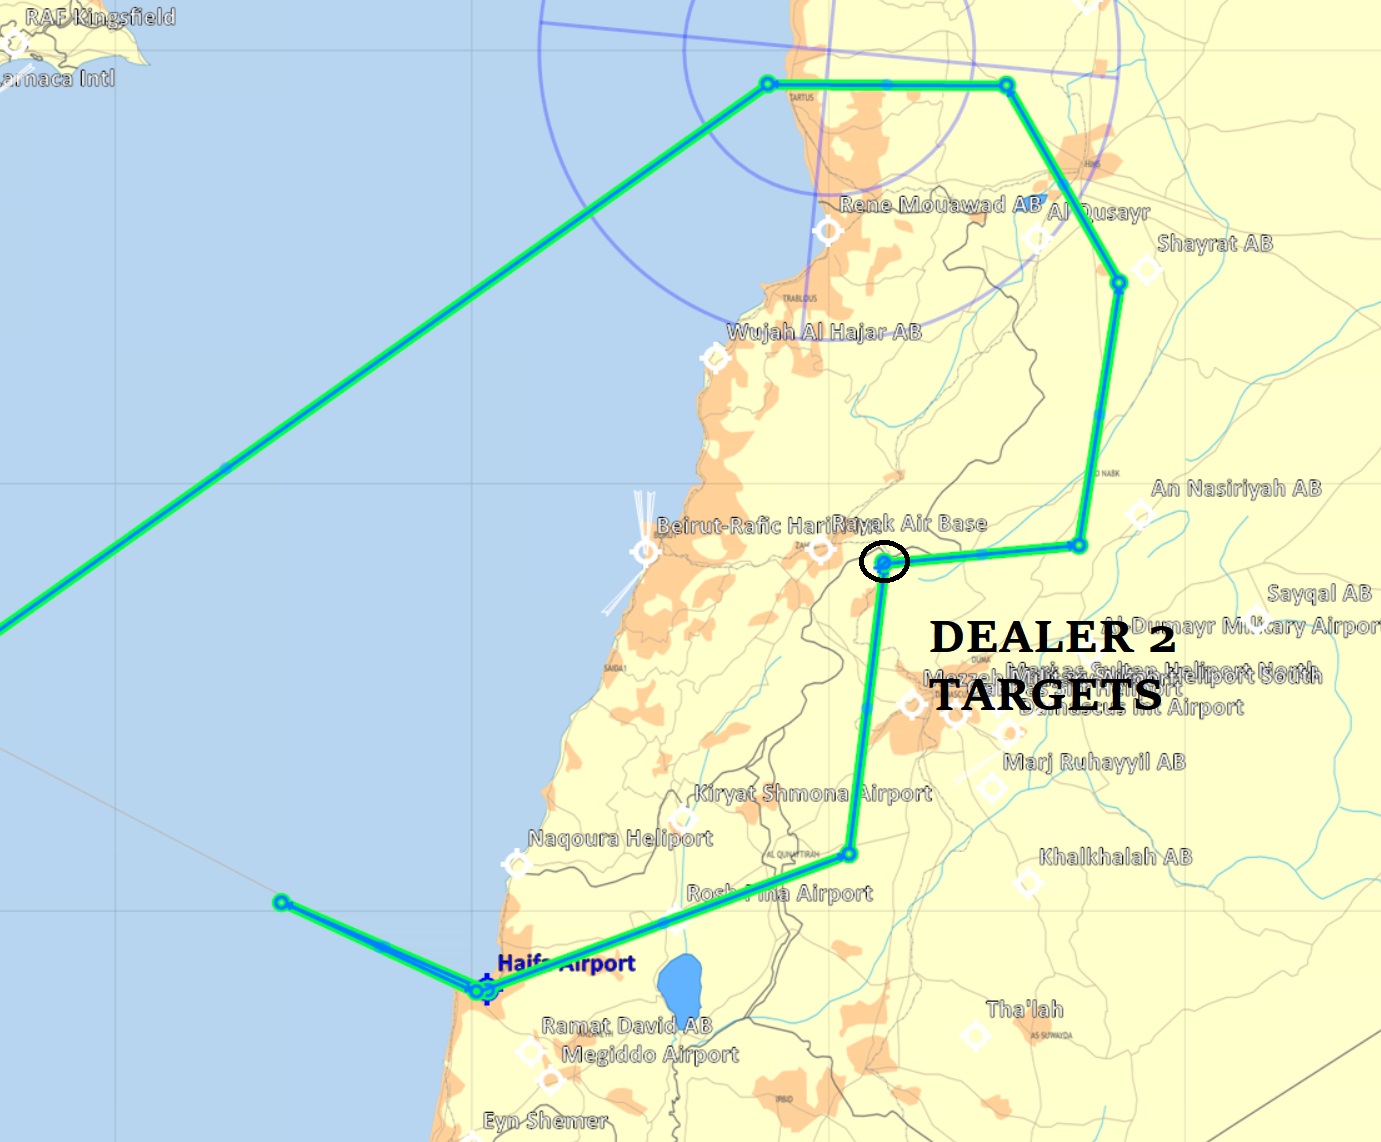 week14 dealer 2 target route map.jpg